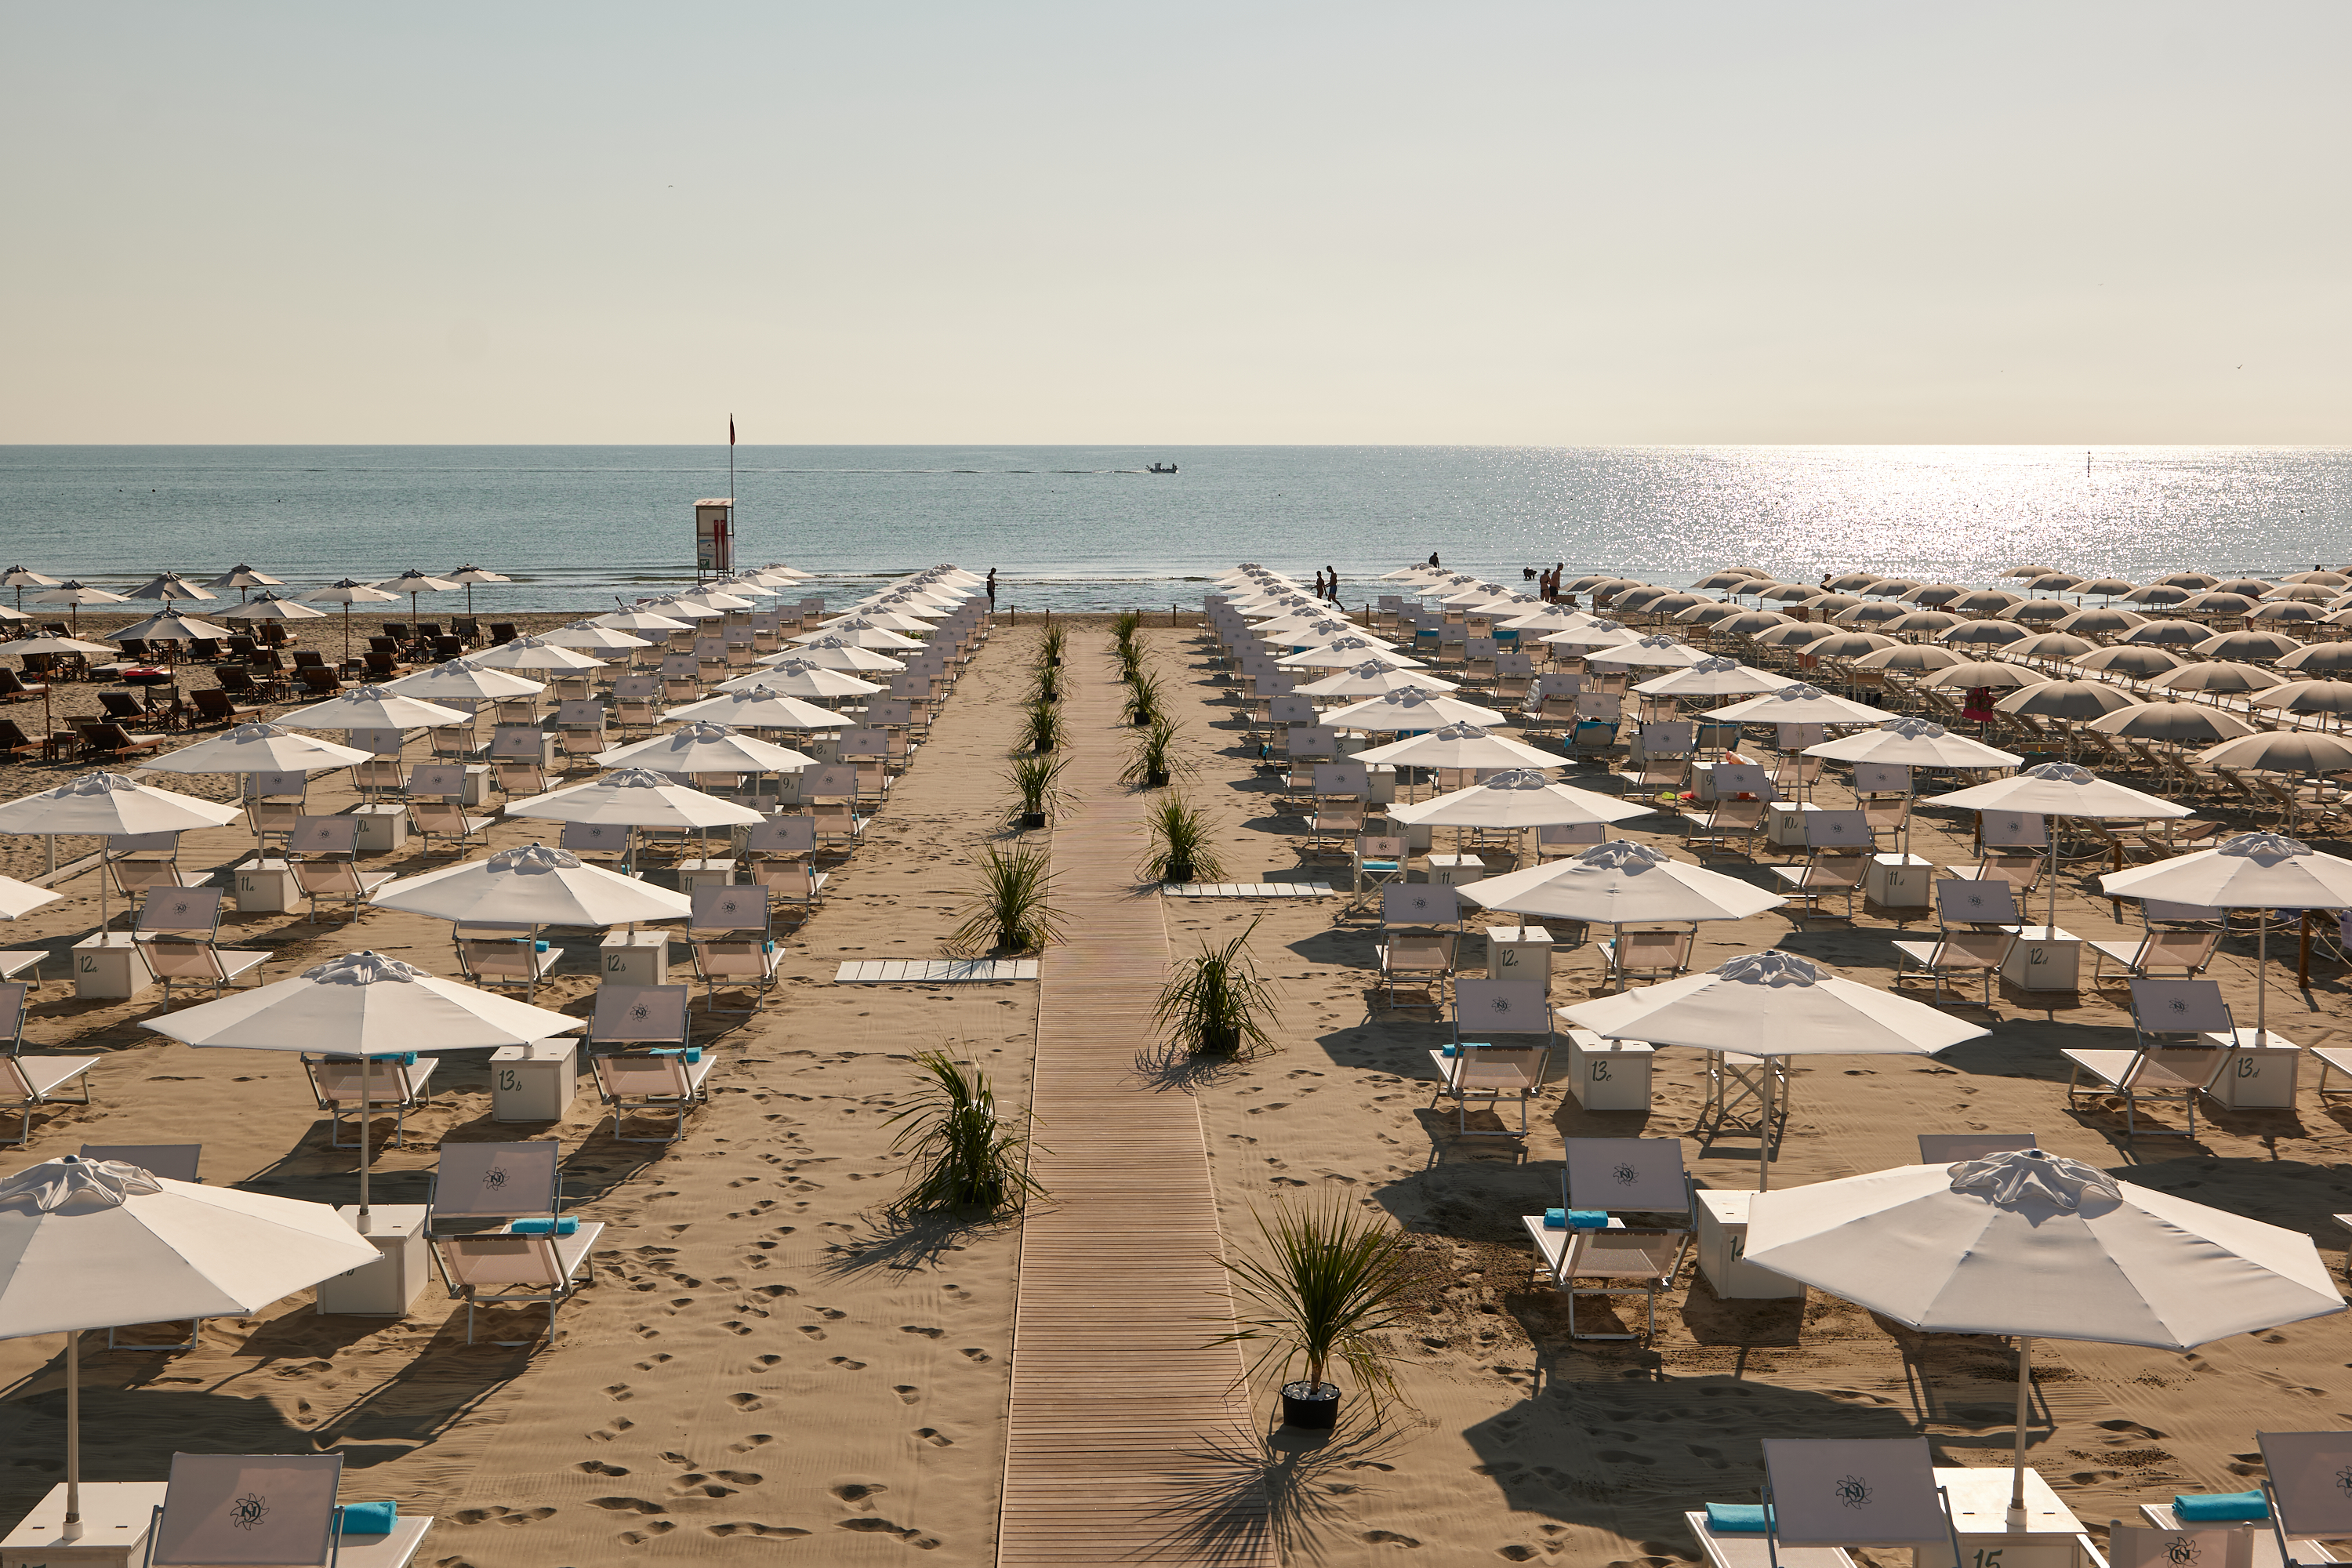 Private beach bagno giuliano hotel saraceno 4 stars